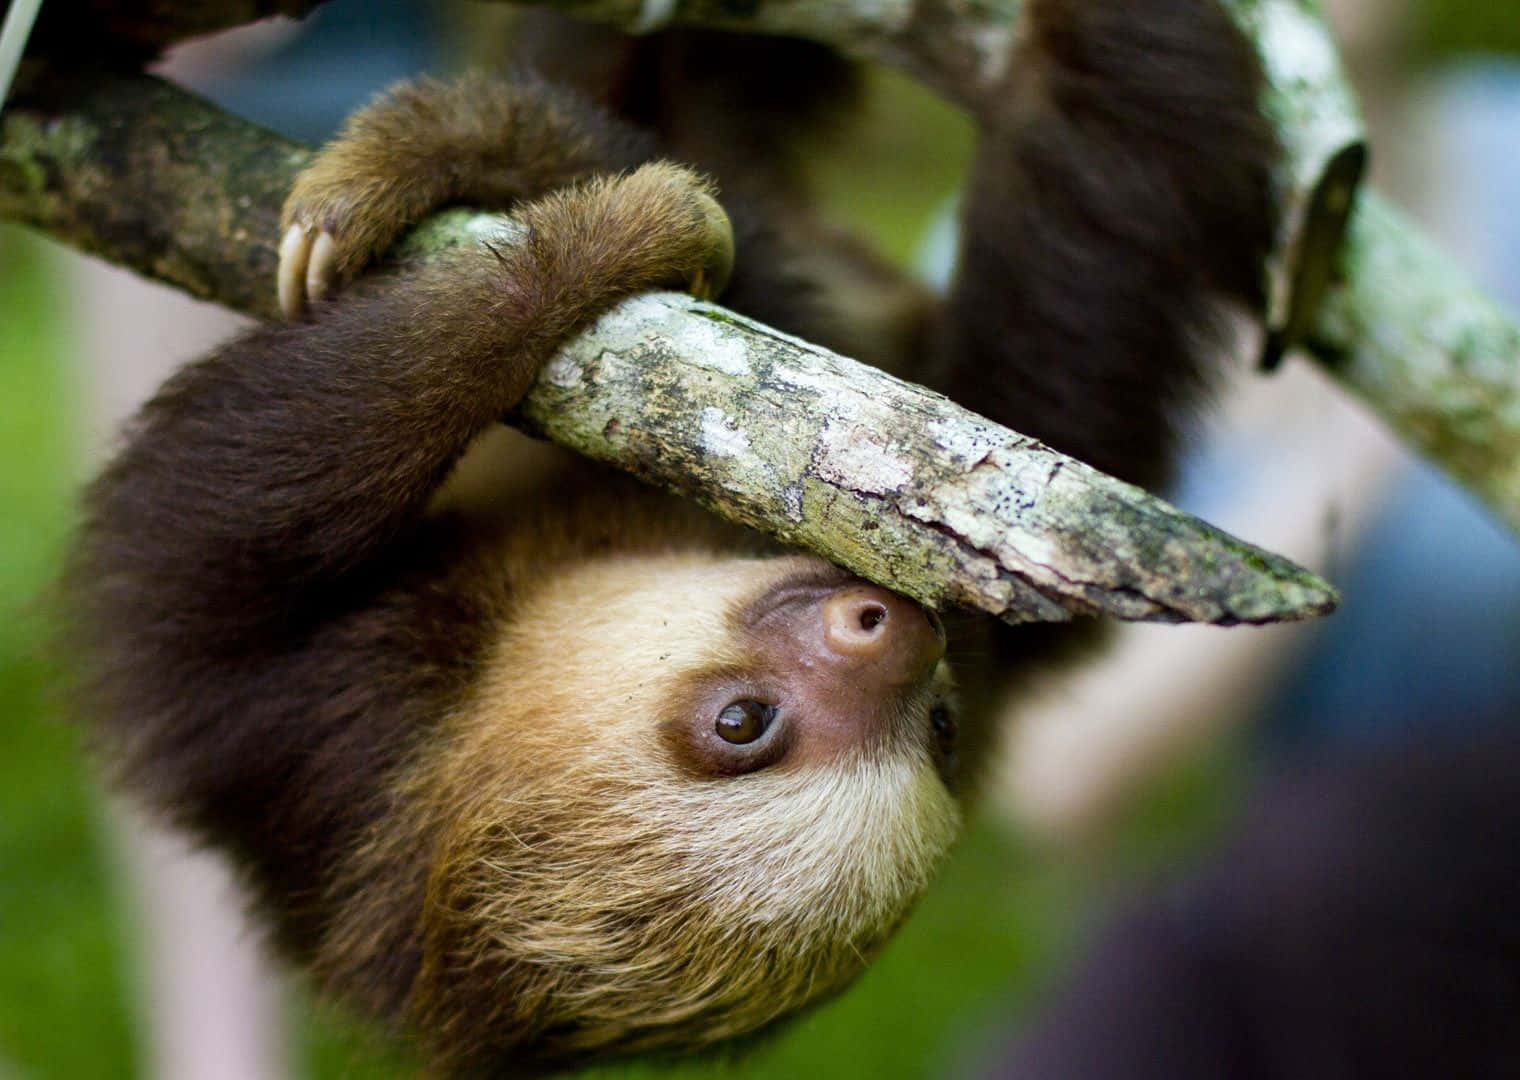 Adorable Baby Sloth Enjoys a Snack